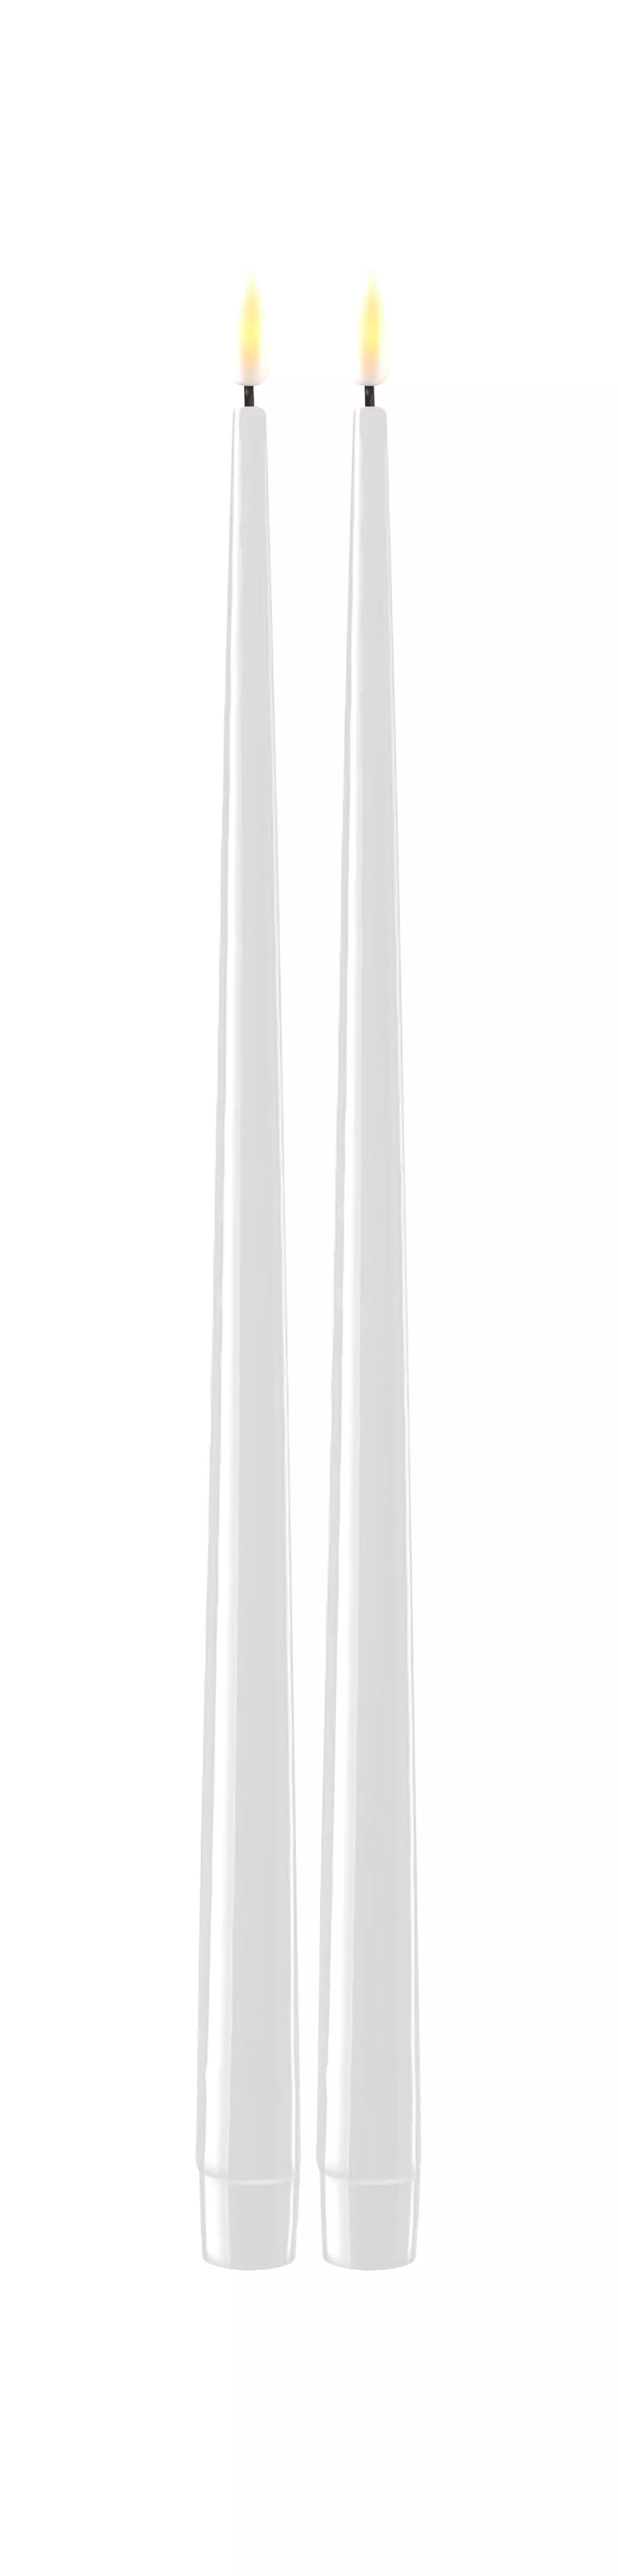 Deluxe Kronelys Hvit 38cm 2pk, 5744001241301, RF-K-0002, Interiør, Lys, Deluxe Homeart, Hvid LED Kertelys med Lak, 2 stk (38 cm)